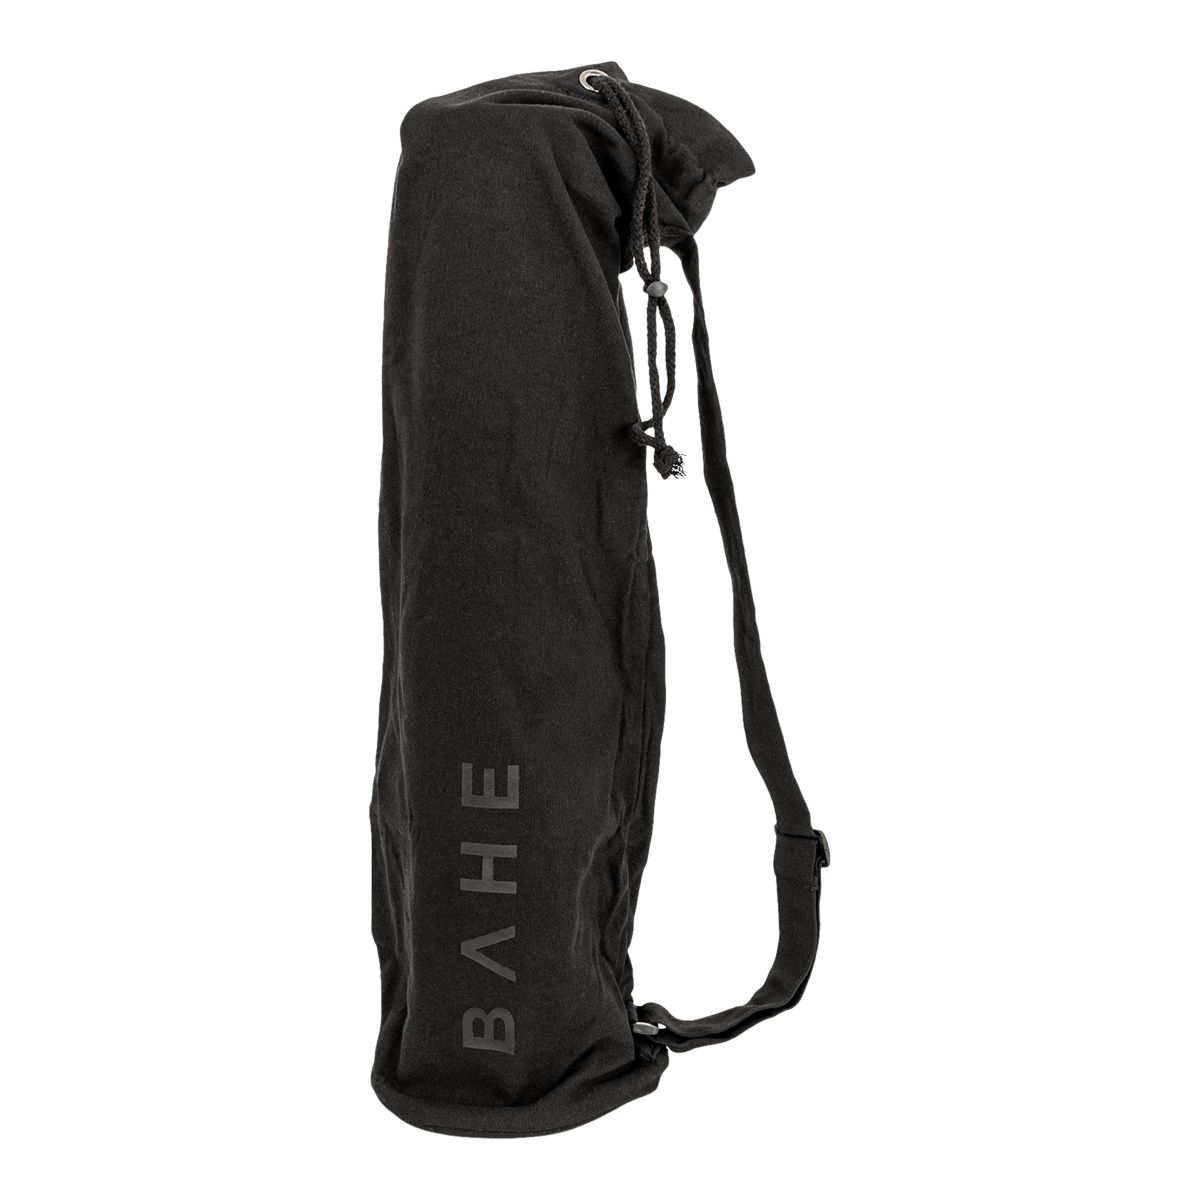 AVIVA YOGA Yoga Bag for Mat & Accessories for Women & Men – Black